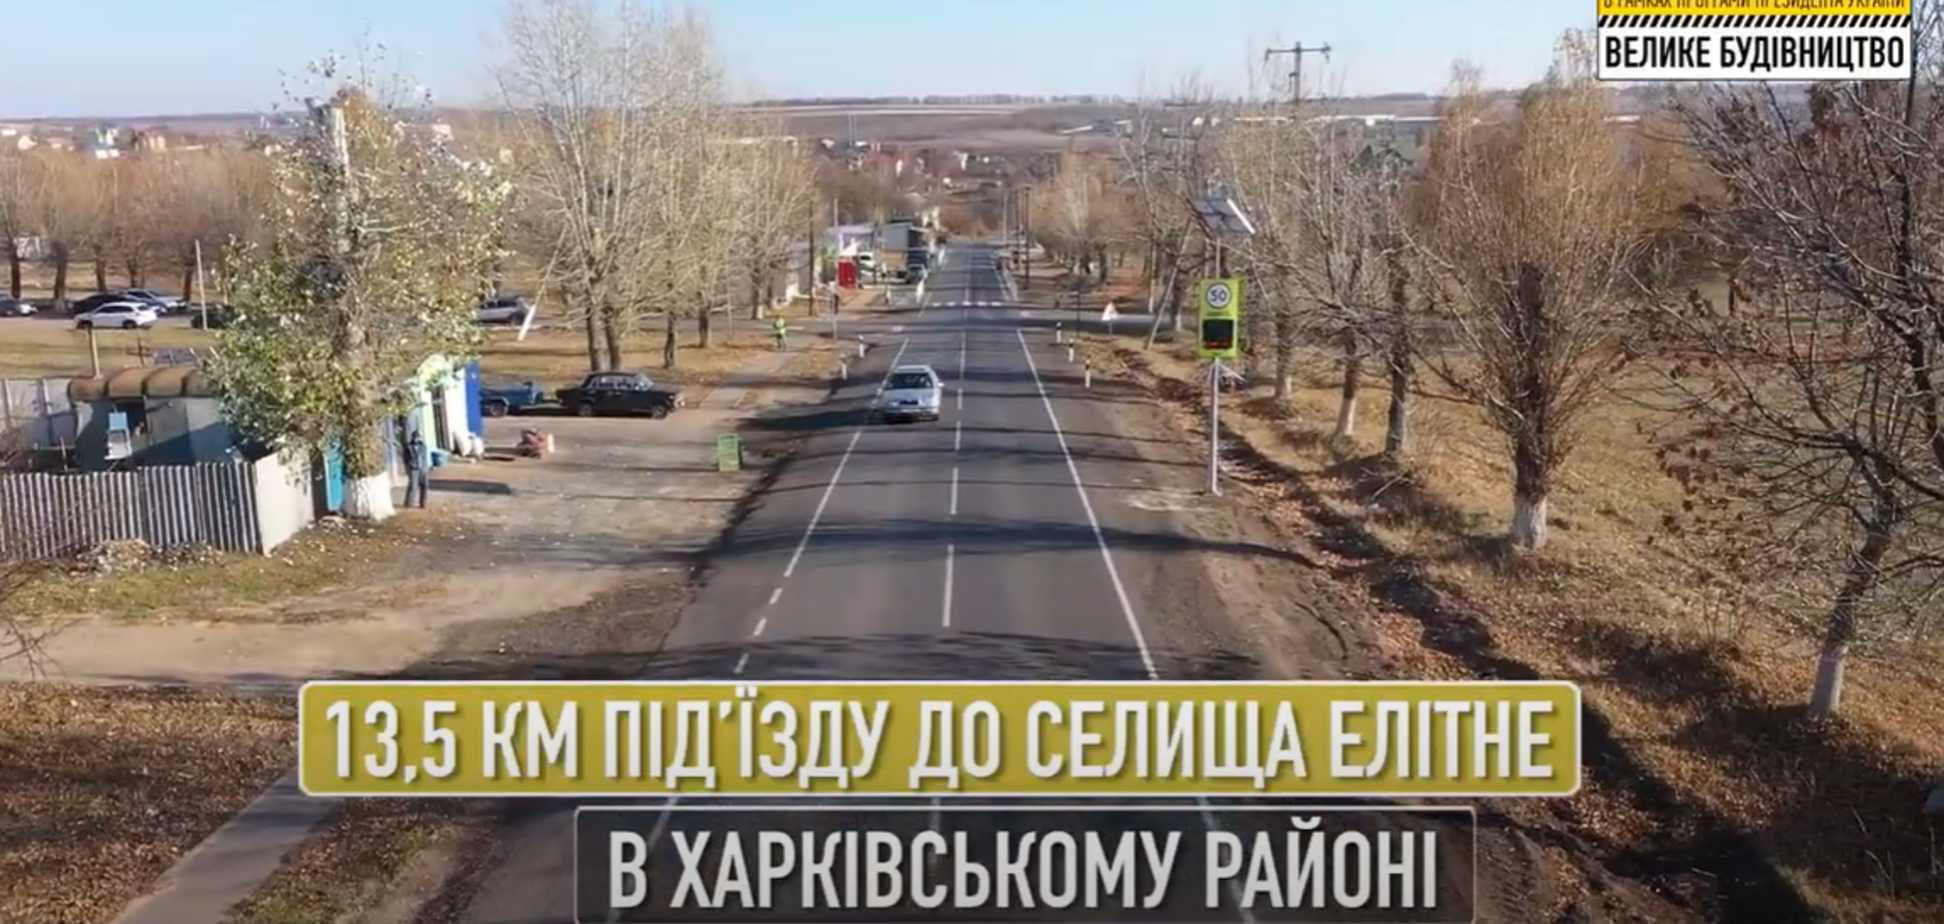 У Вільхівській ОТГ на Харківщині вперше за 40 років було проведено капітальний ремонт дороги